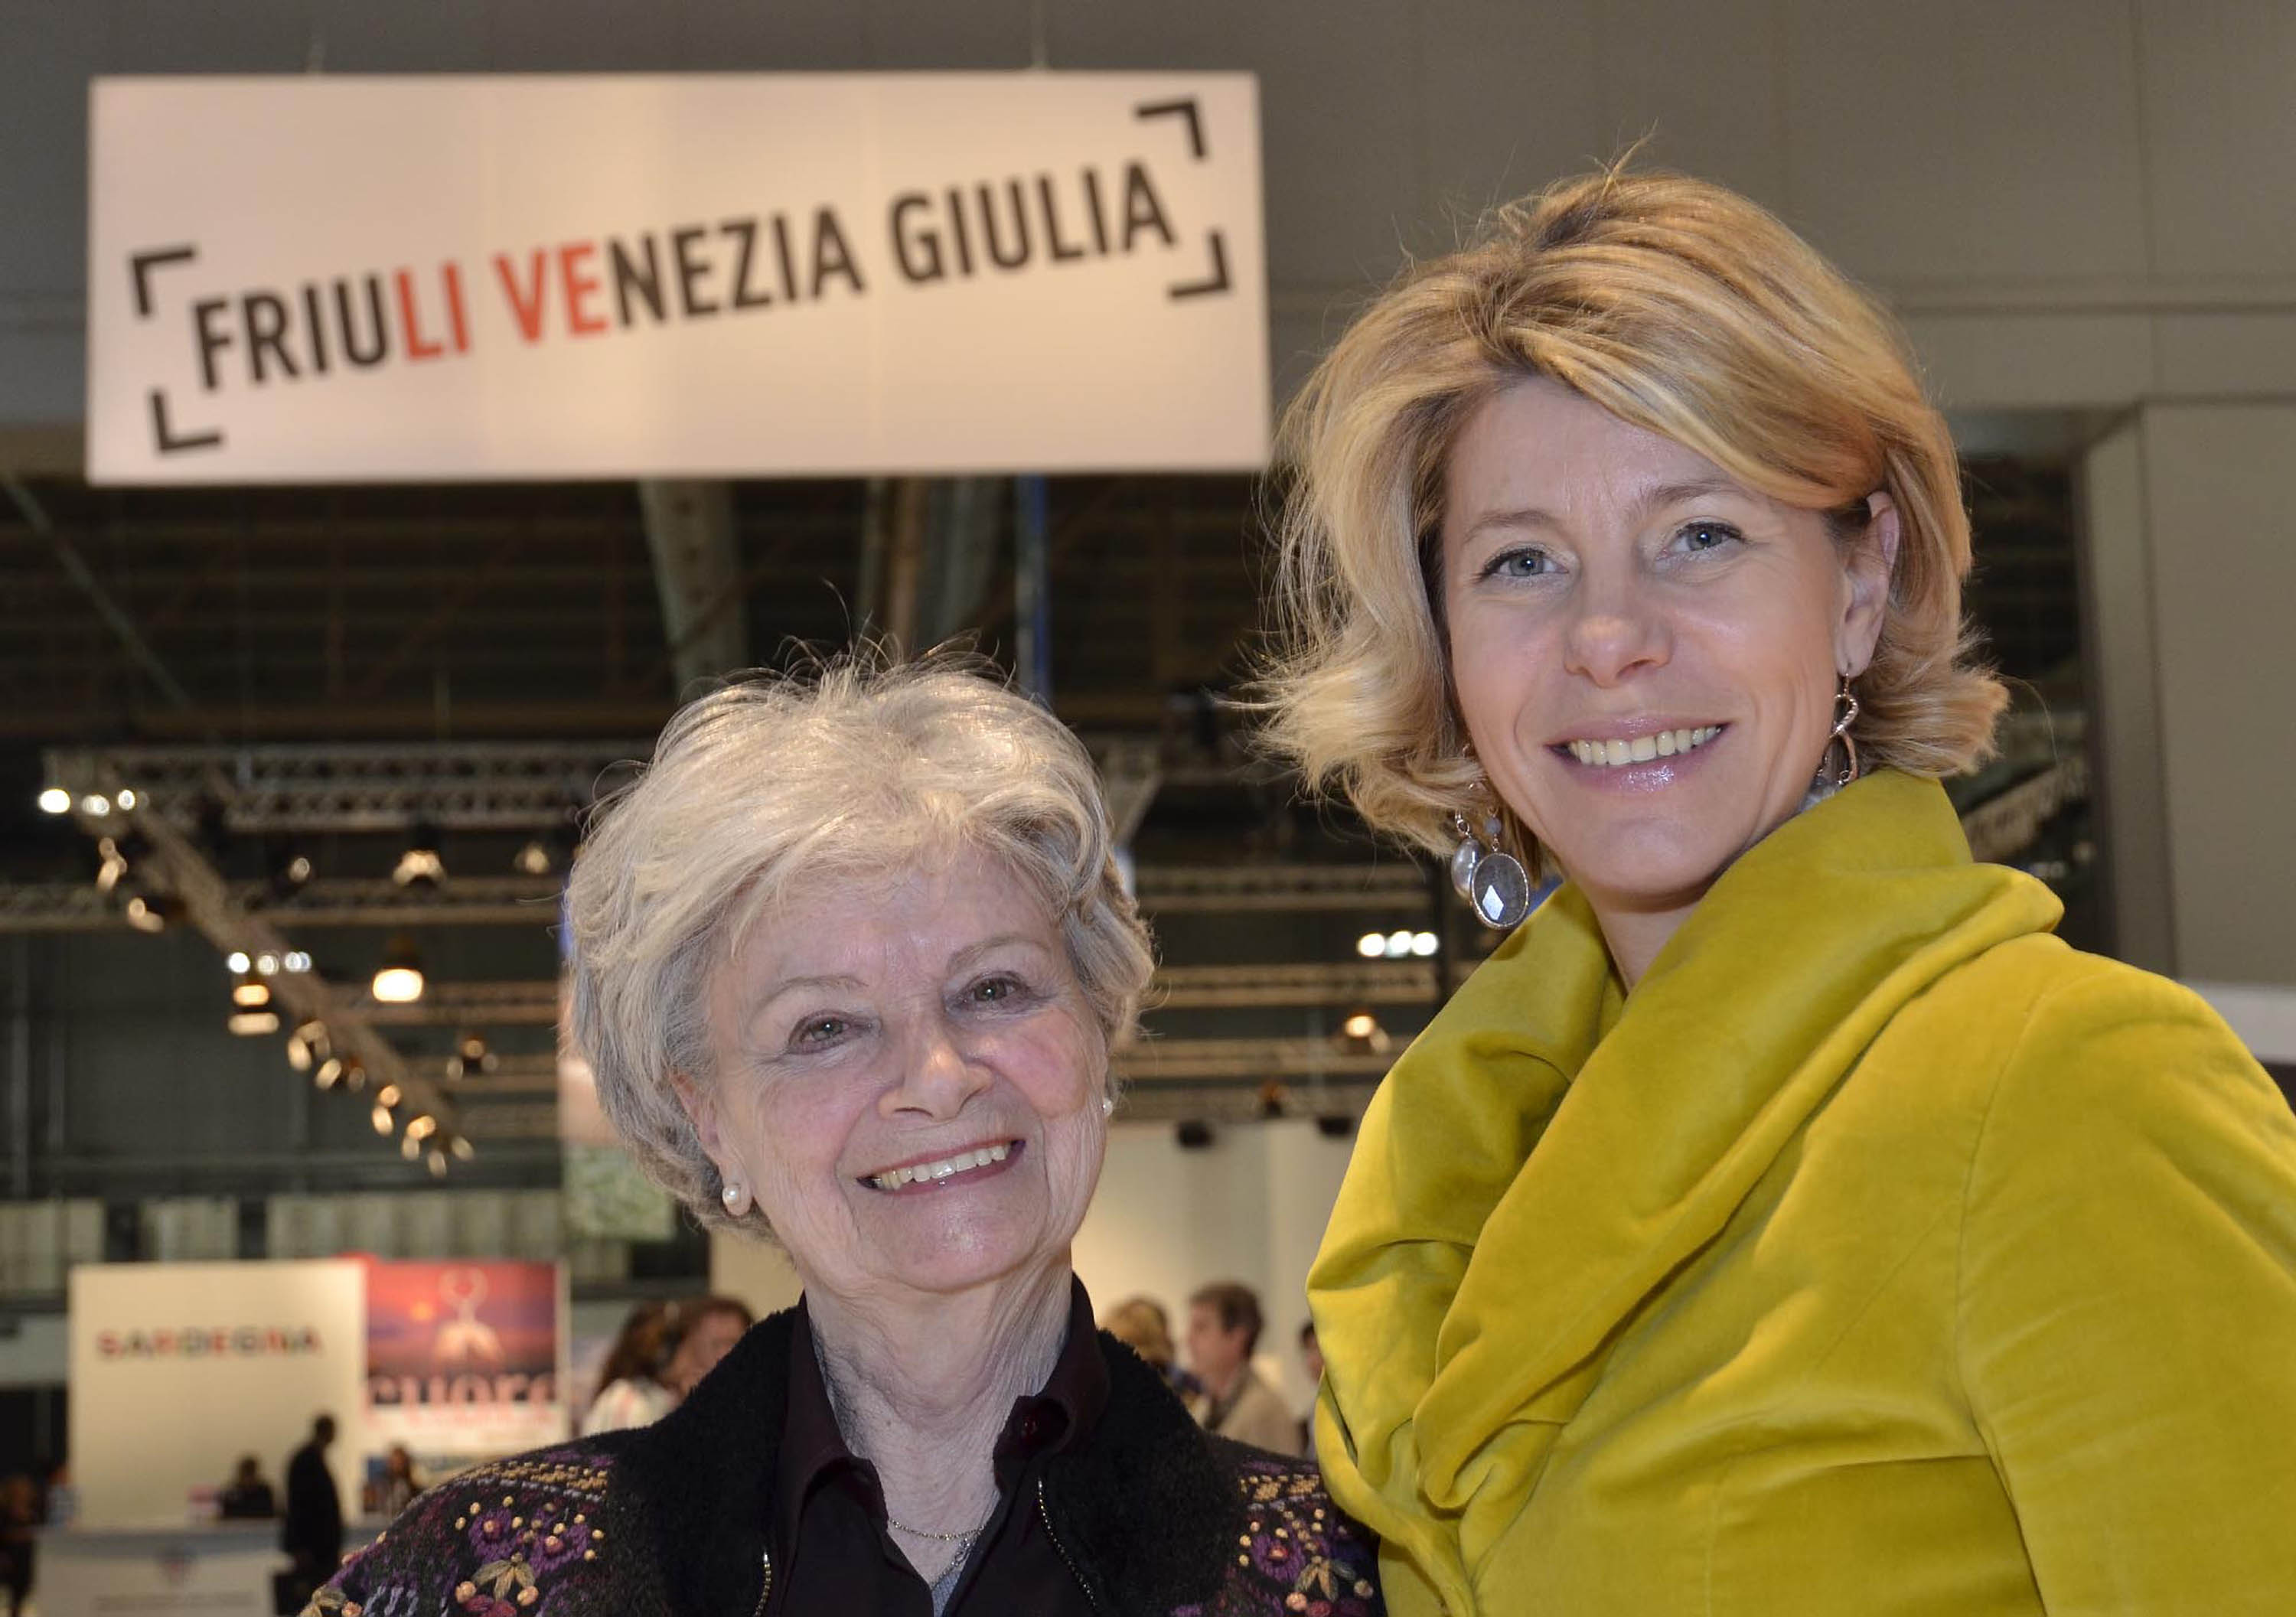 Ariella Reggio (Attrice) e Federica Seganti (Assessore regionale Attività produttive) all'apertura dello stand del Friuli Venezia Giulia alla BIT-Borsa Internazionale Turismo. (Milano 16/02/12)